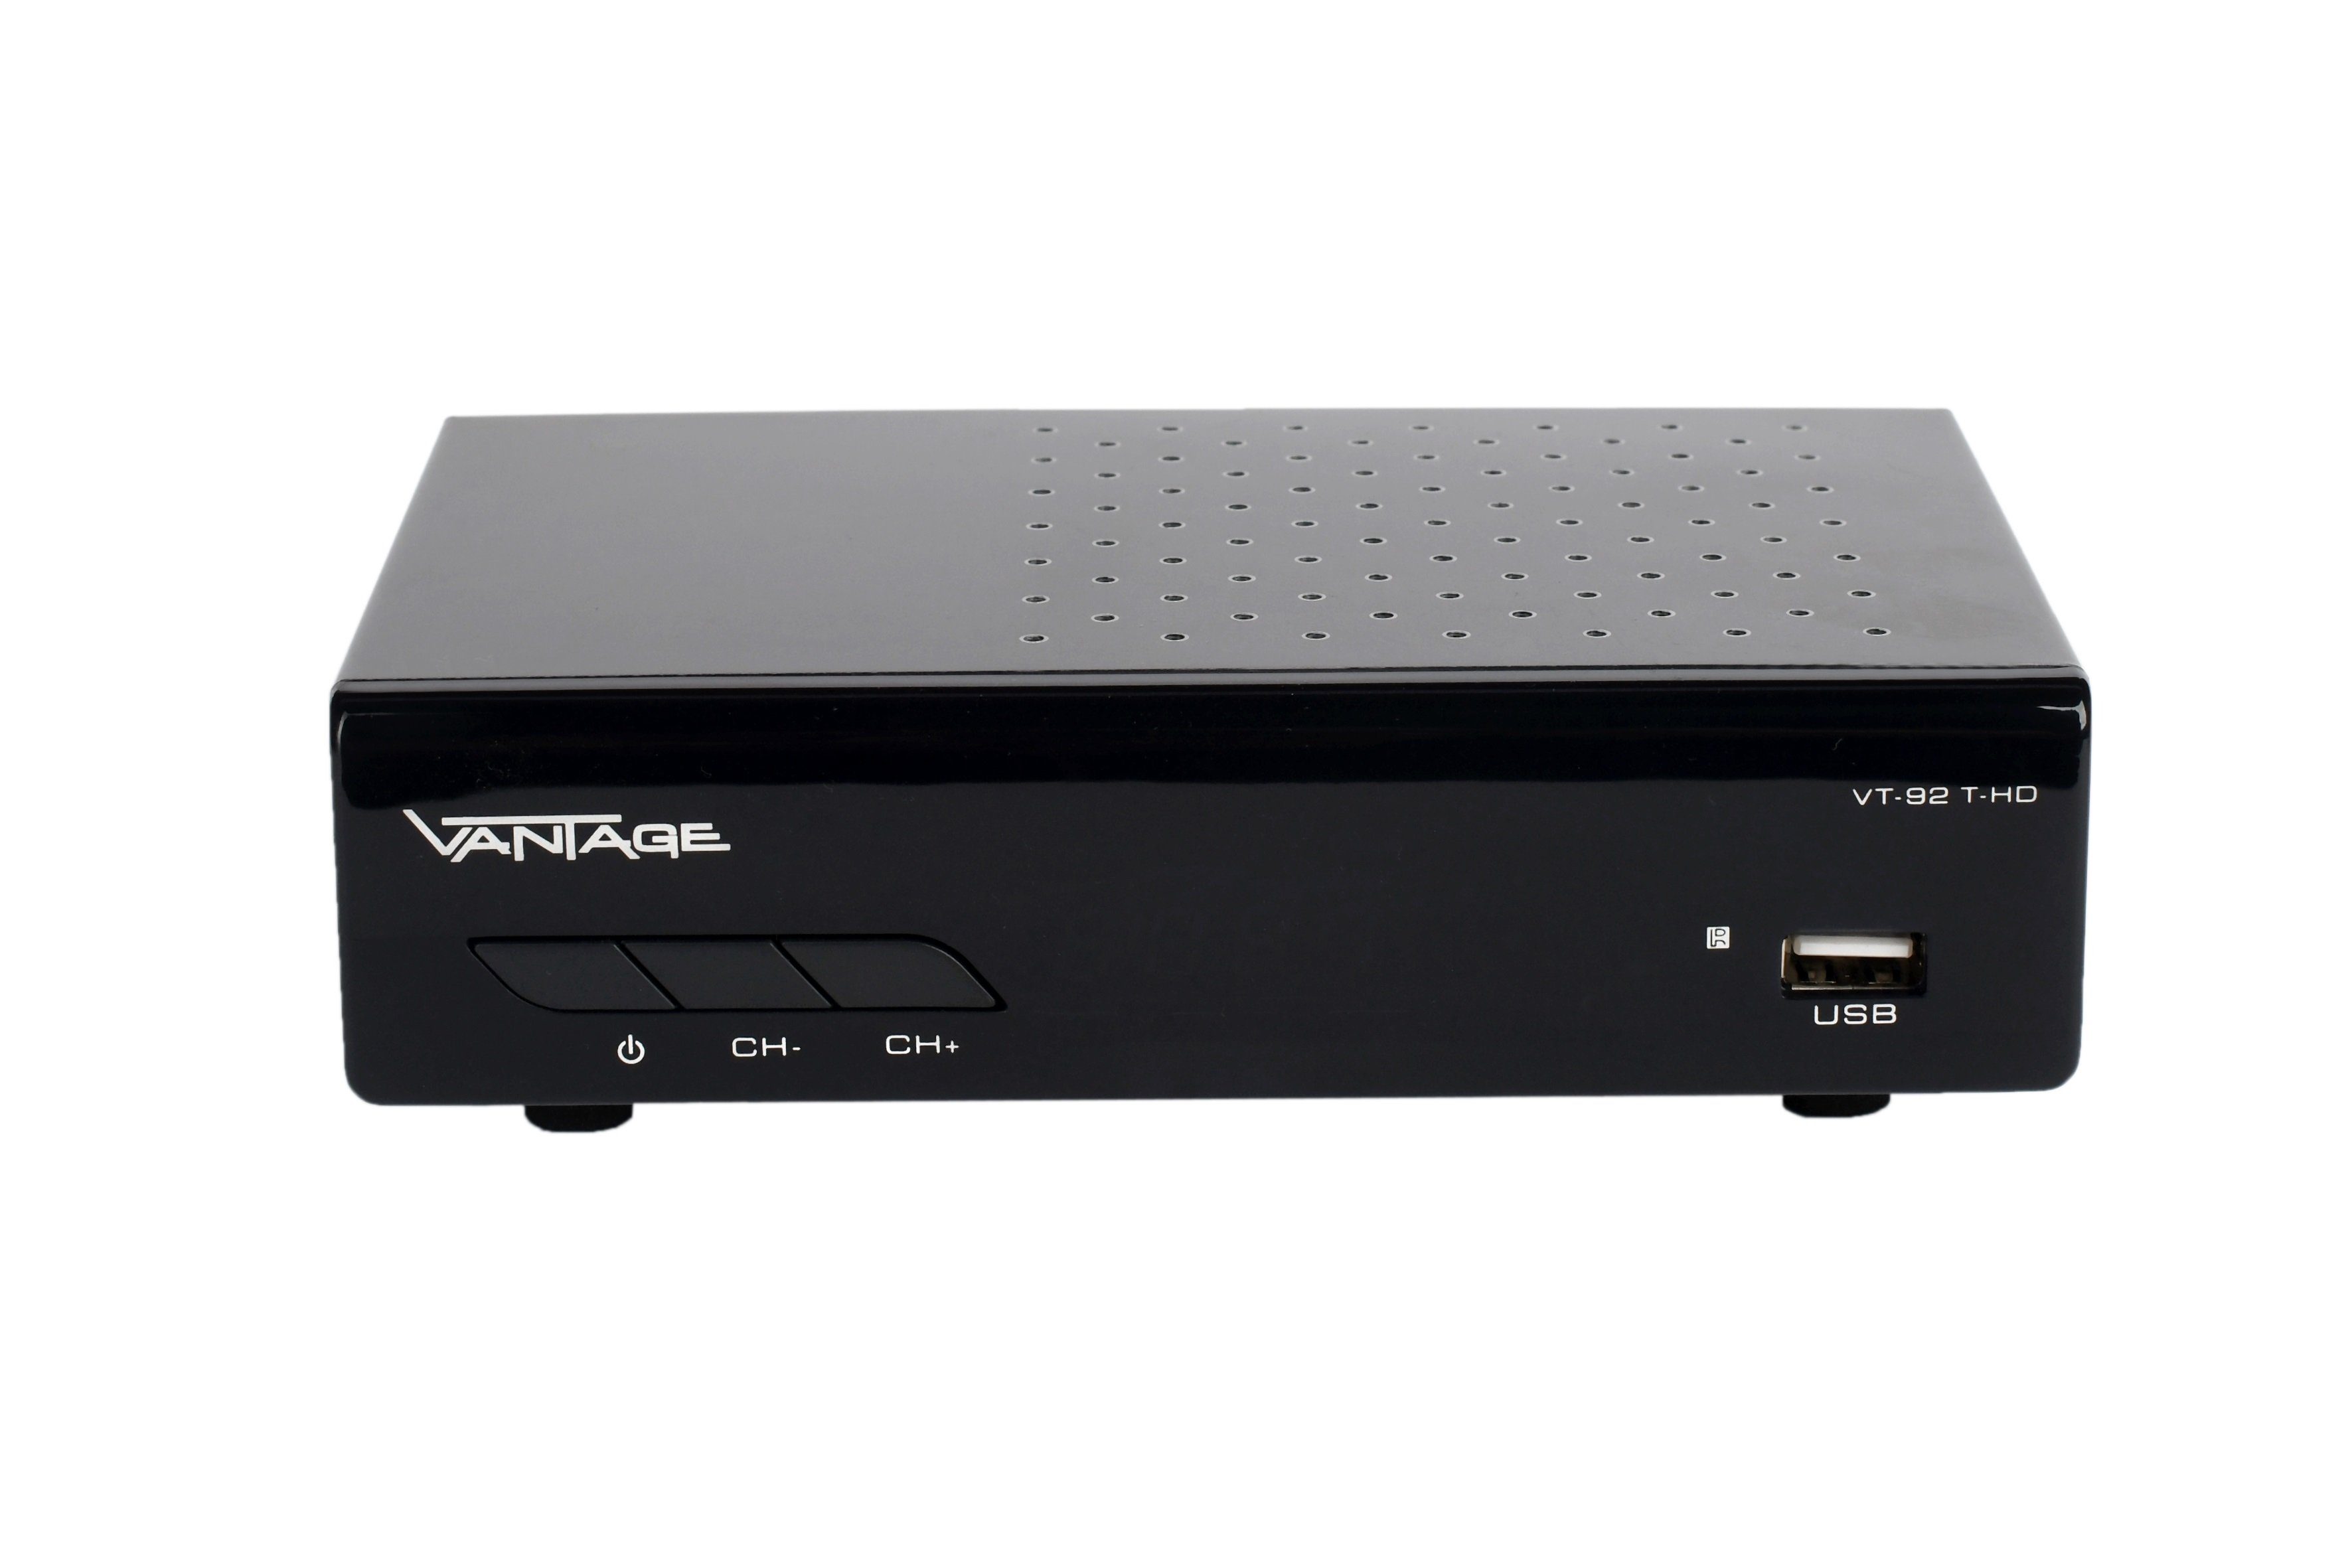 Vantage DVB-T2 HD Receiver